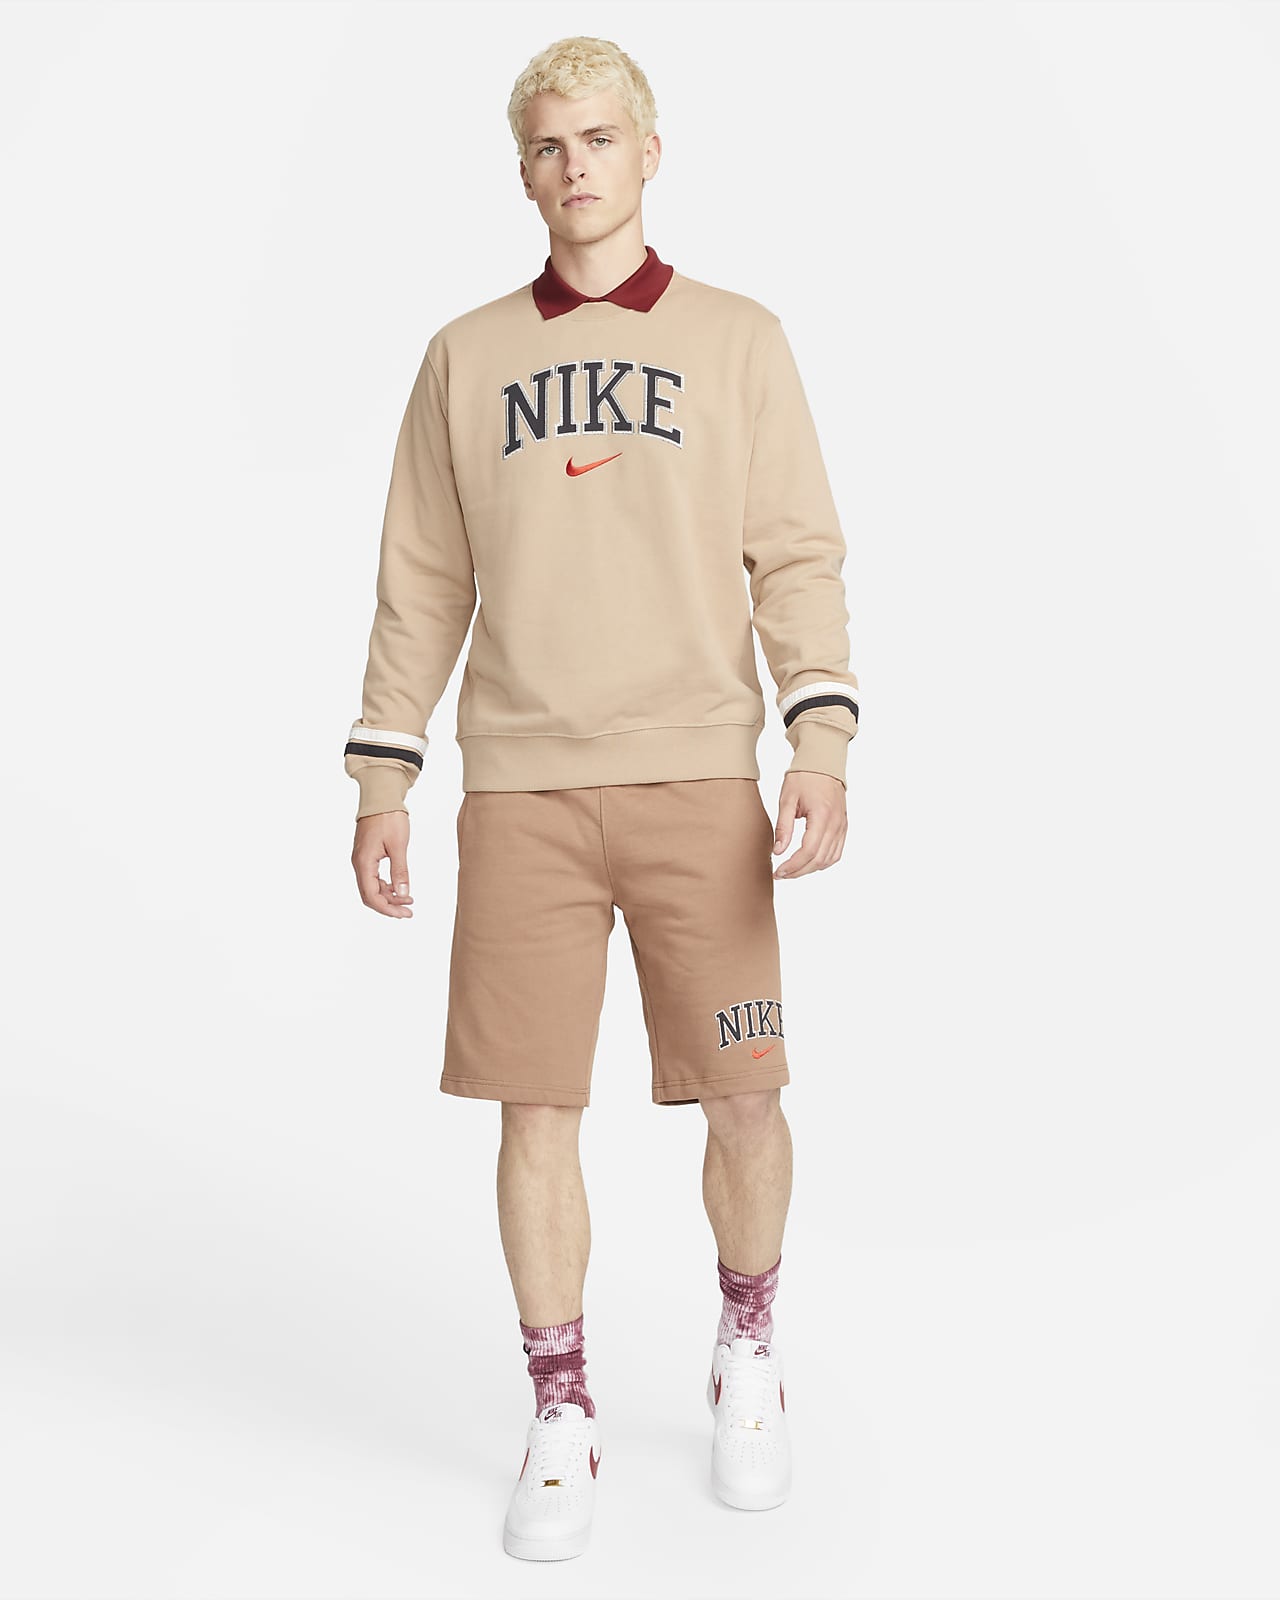 Nike Sportswear Men's Retro Fleece Sweatshirt. Nike CH